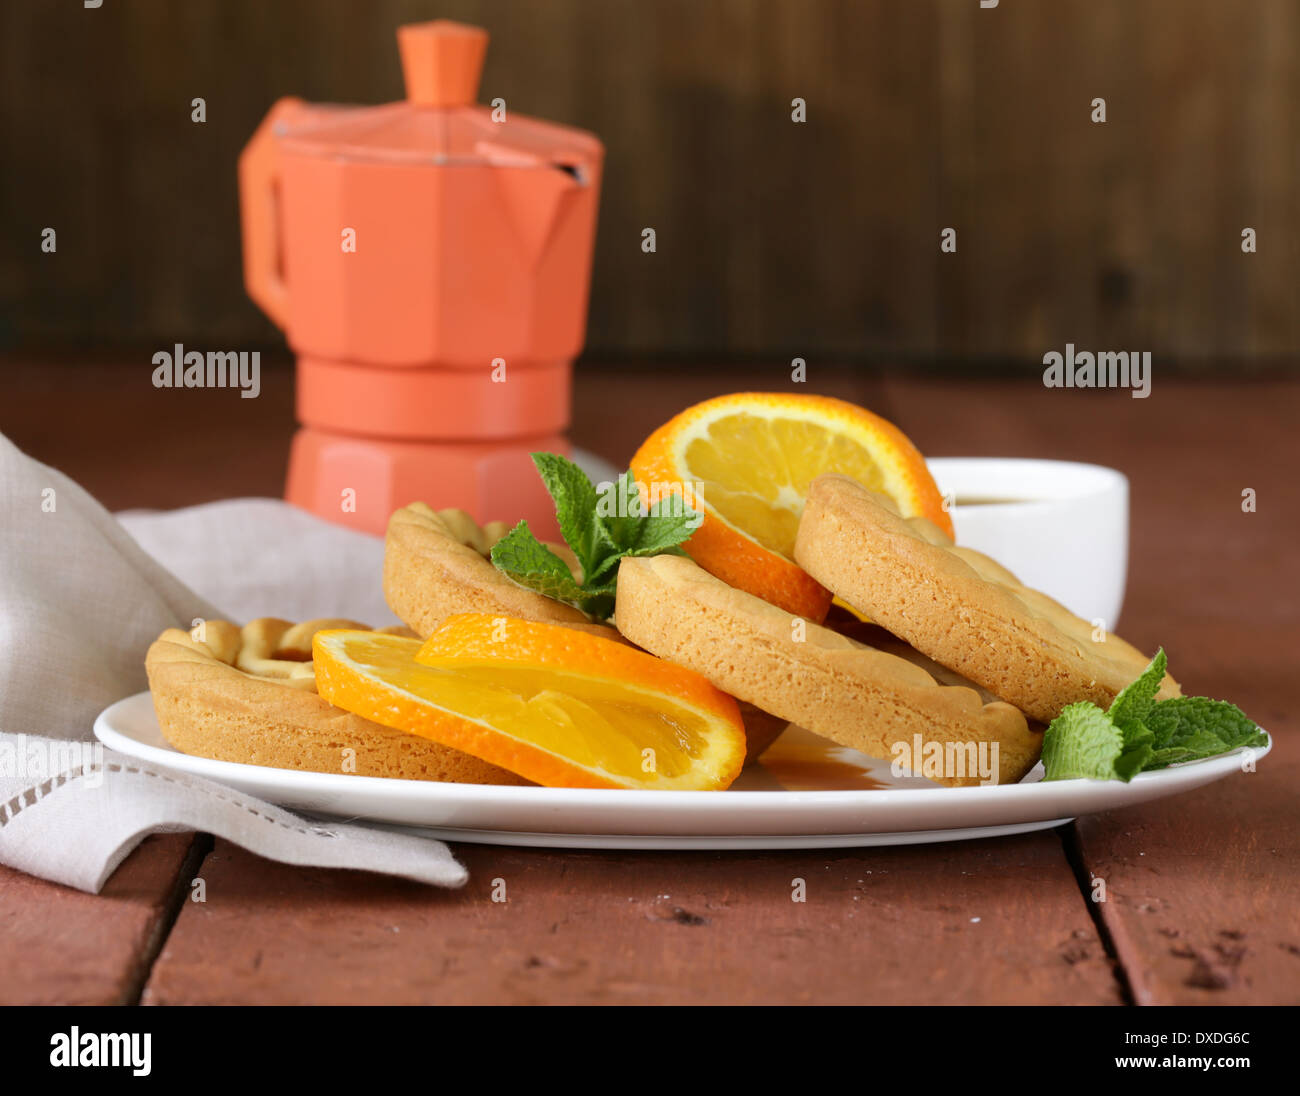 mini dessert tarts with orange on wooden table Stock Photo